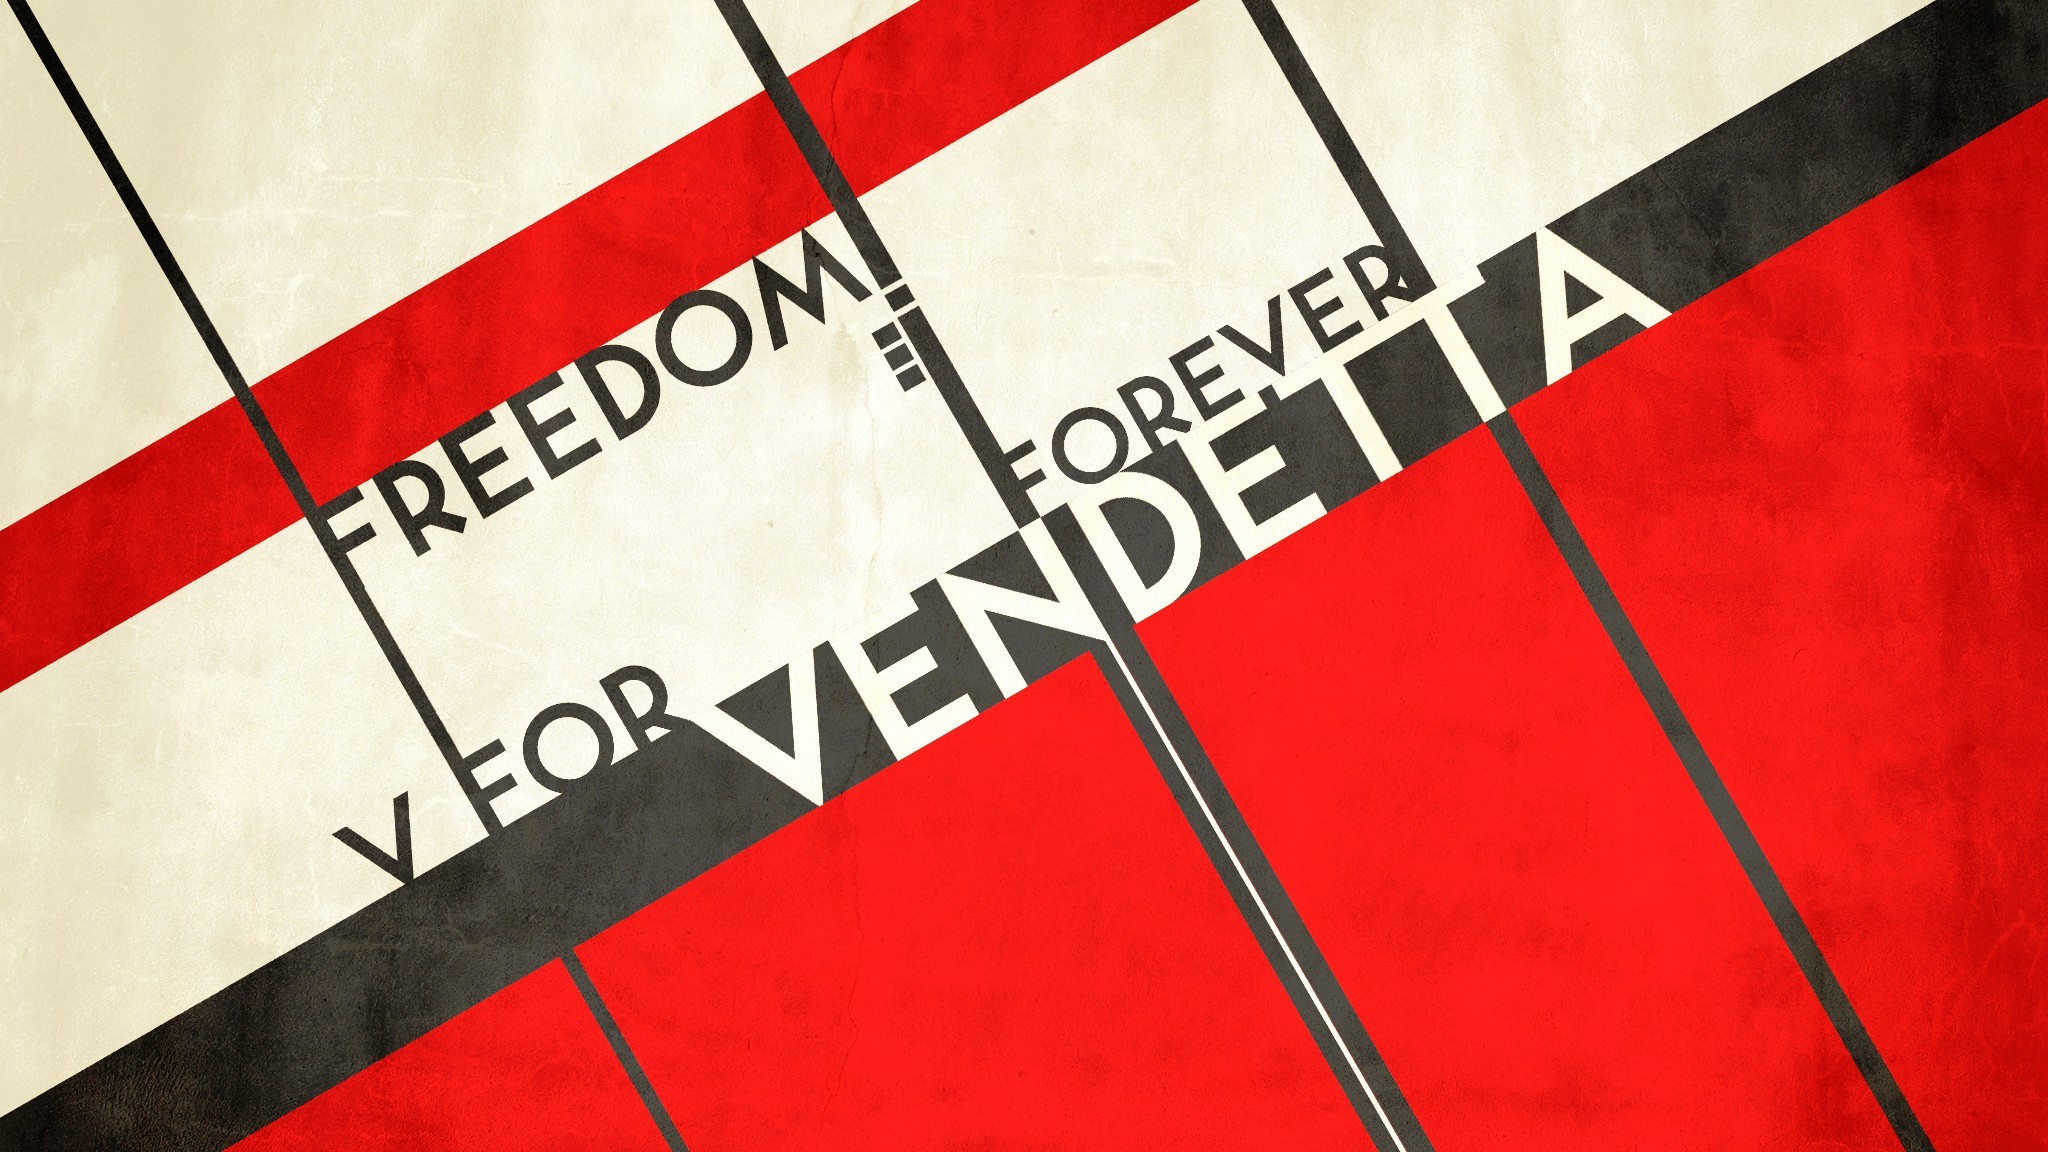 V For Vendetta Wallpaper